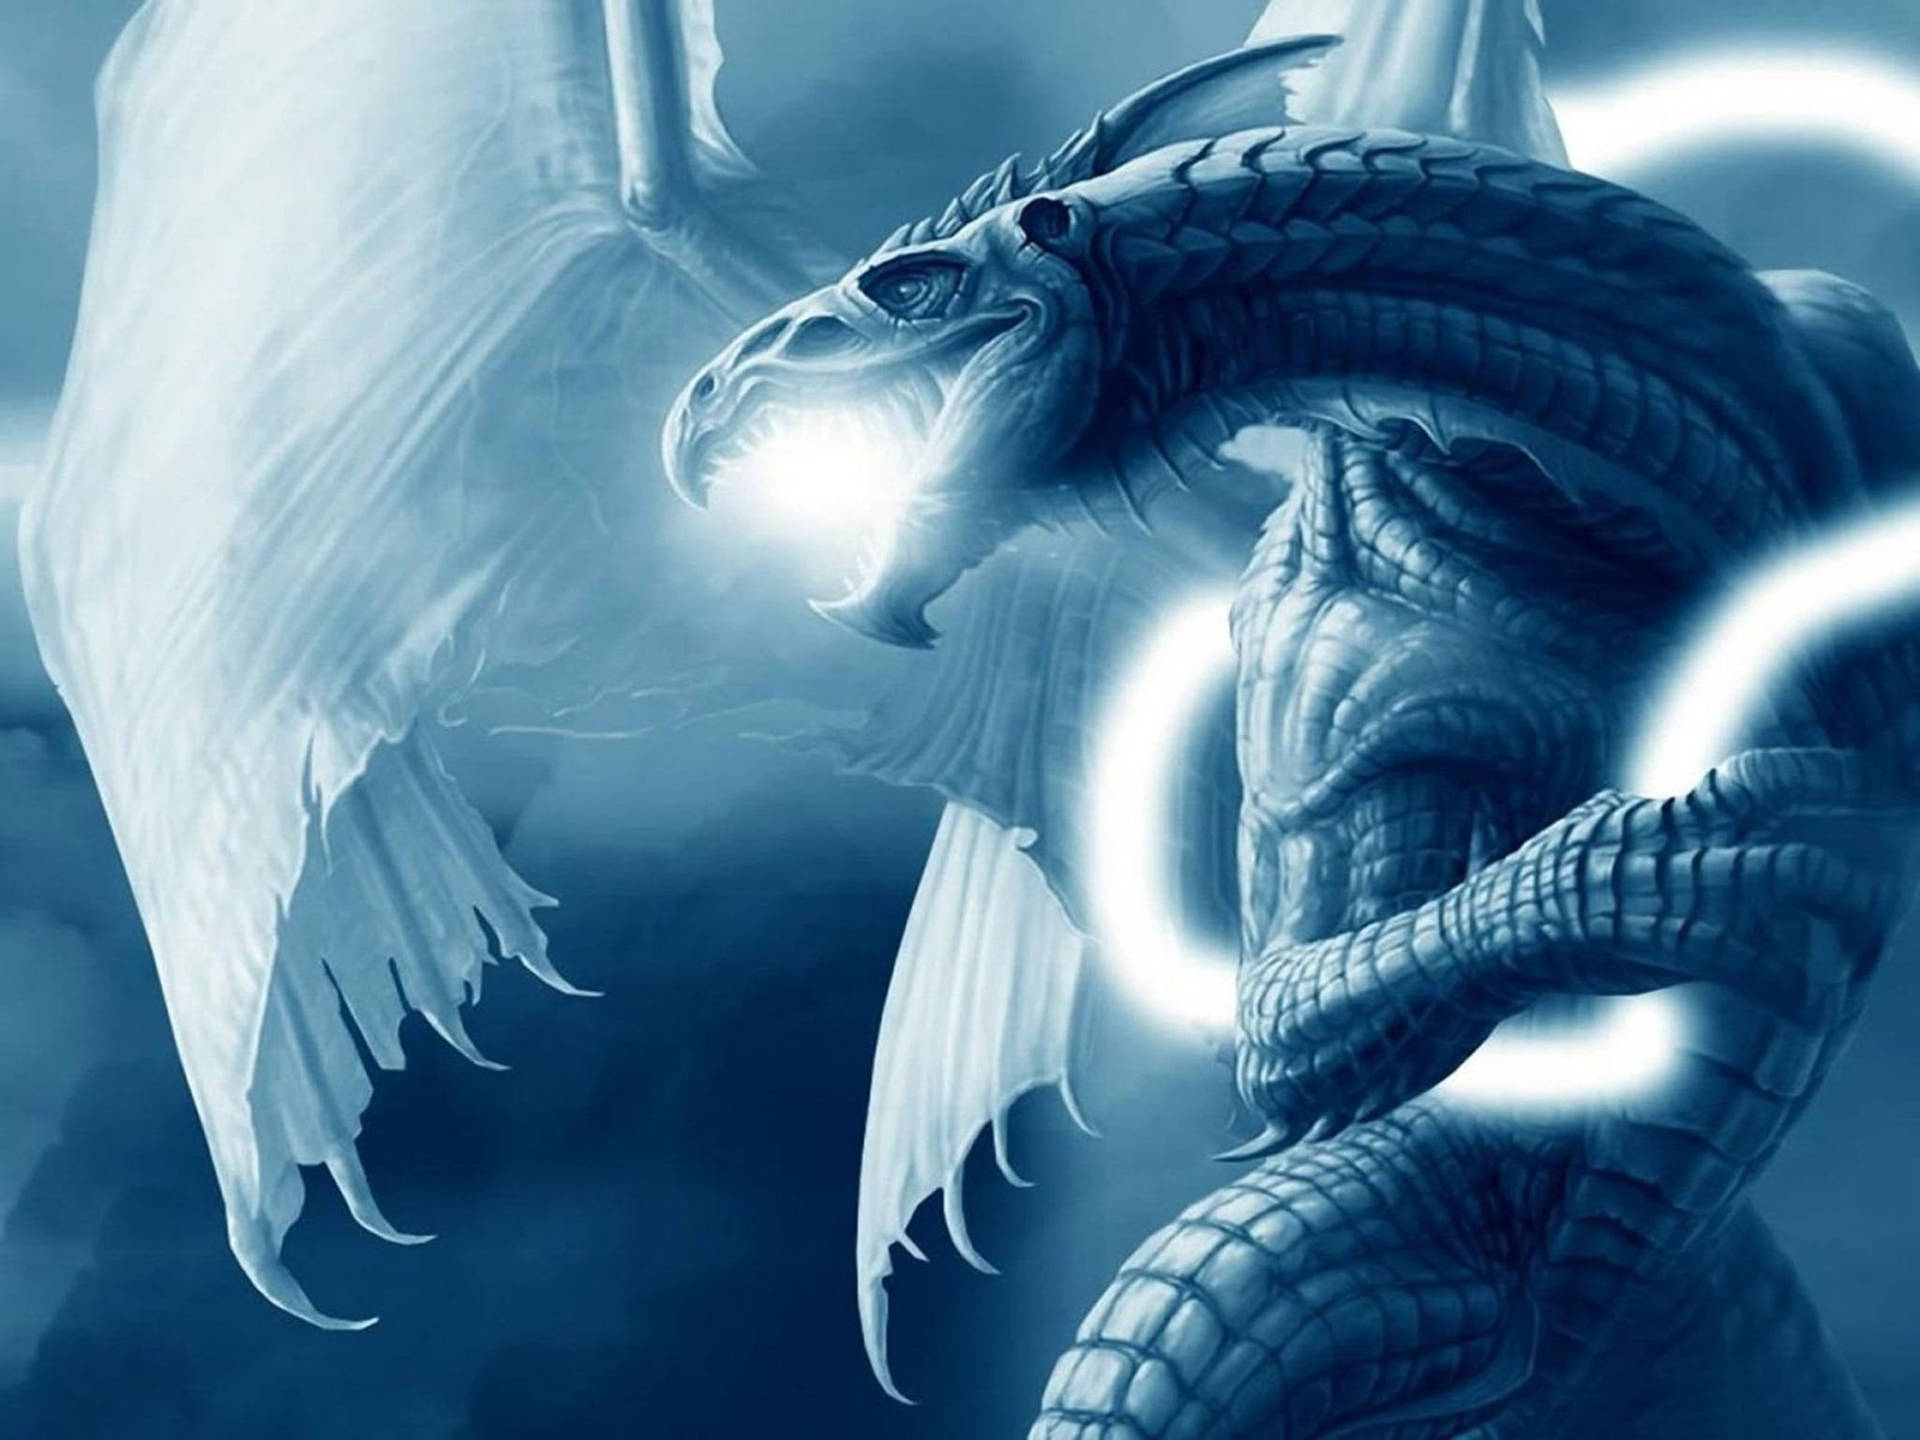 Ice Dragon: Con rồng băng giá chắc chắn sẽ mang lại cho bạn niềm vui khi chiêm ngưỡng hình ảnh của chúng. Cùng hòa mình vào thế giới phép thuật và tận hưởng những giây phút thư giãn tuyệt vời với hình ảnh rồng băng giá.